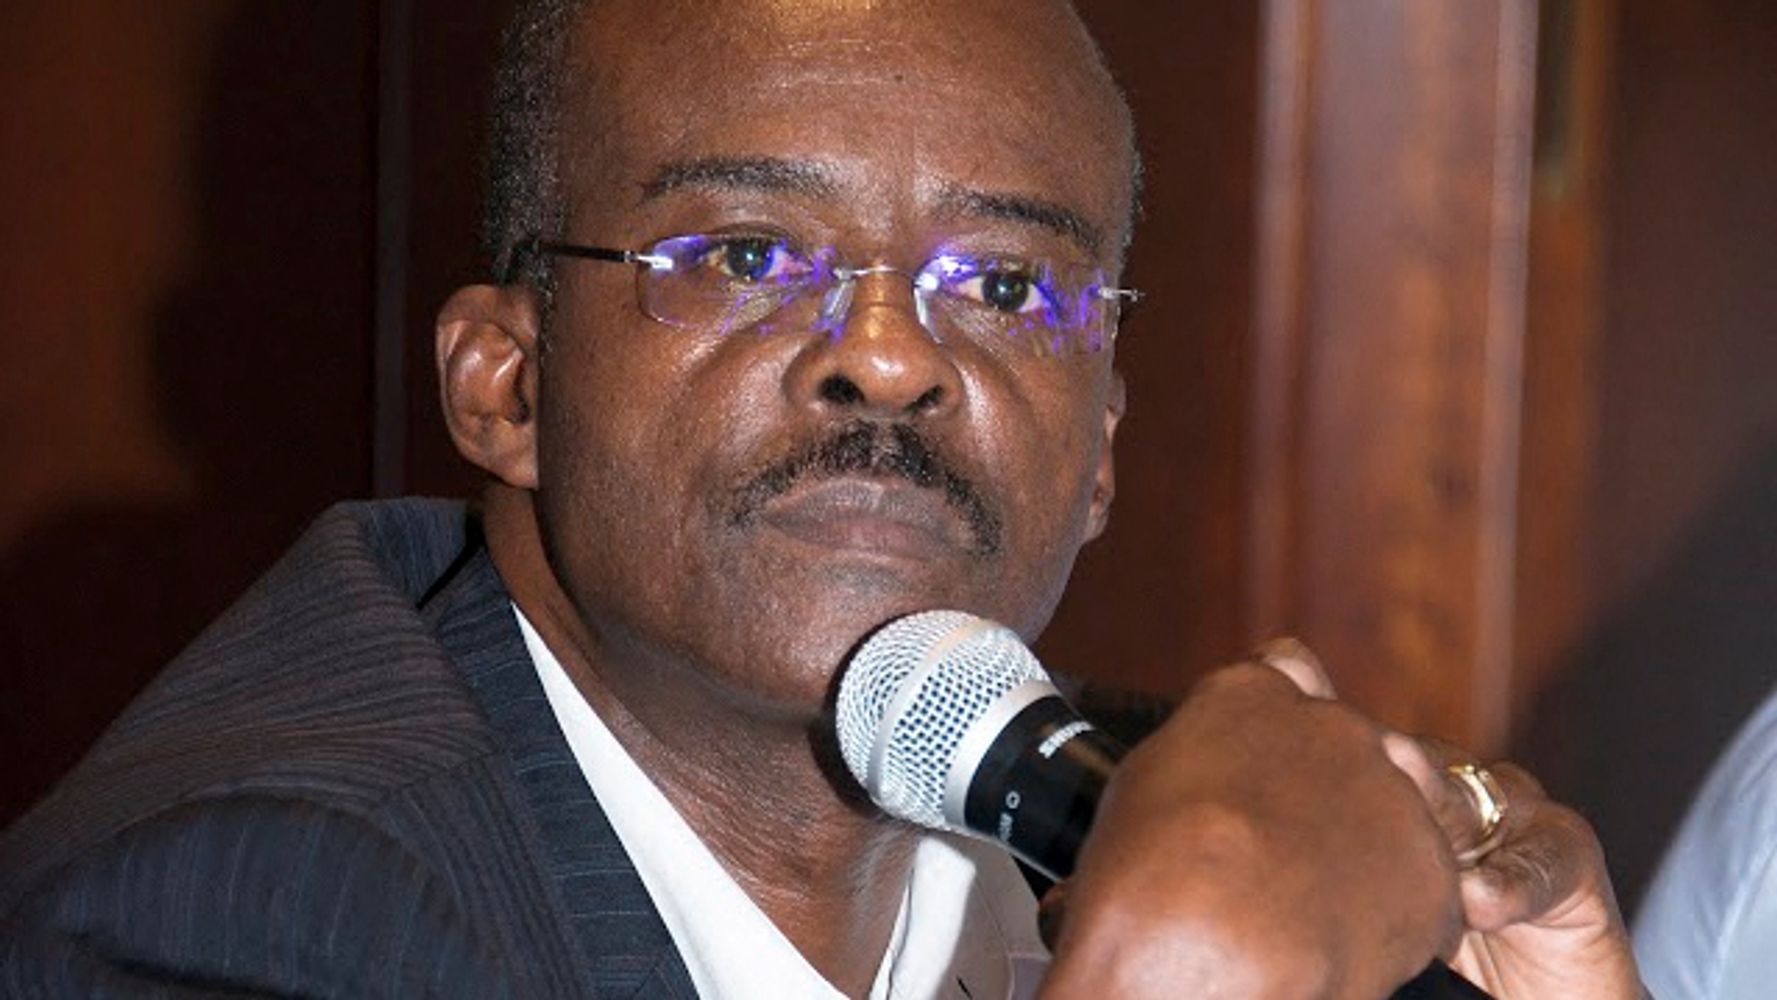 Ary Chalus, président LREM de la région Guadeloupe, a passé plus de 30 heures en garde à vue